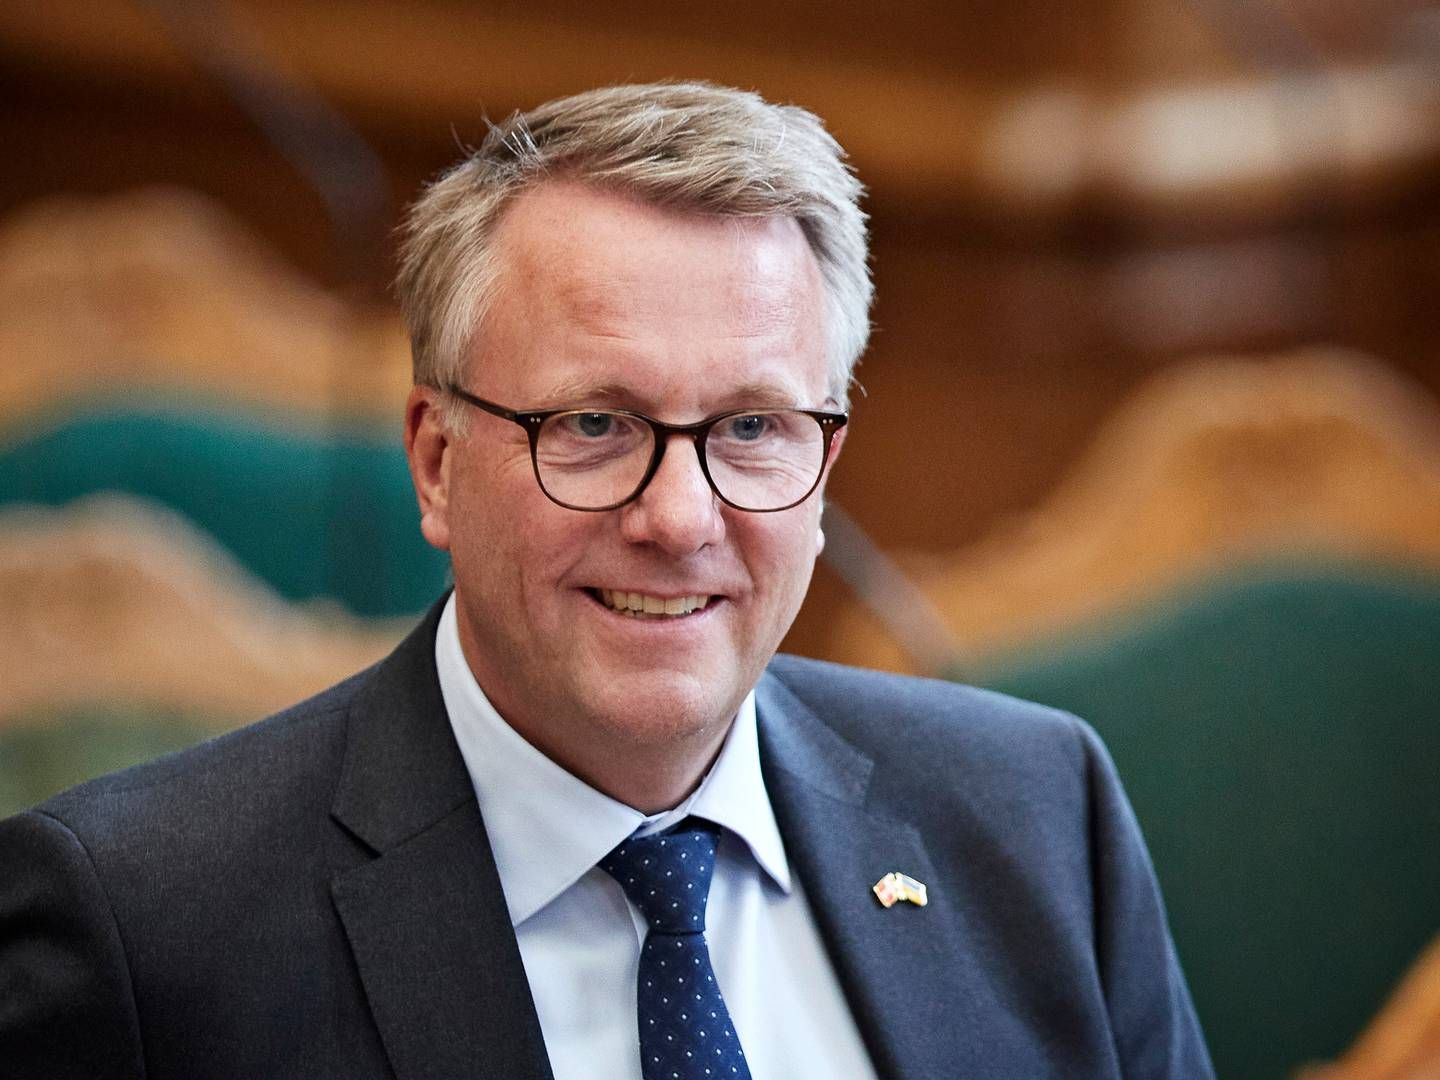 Erhvervsminister Morten Bødskov (S) har fået præsenteret en ny rapport, som b.la. vil gøre op med den såkaldte DIS-ordning. | Foto: Jens Dresling/Ritzau Scanpix